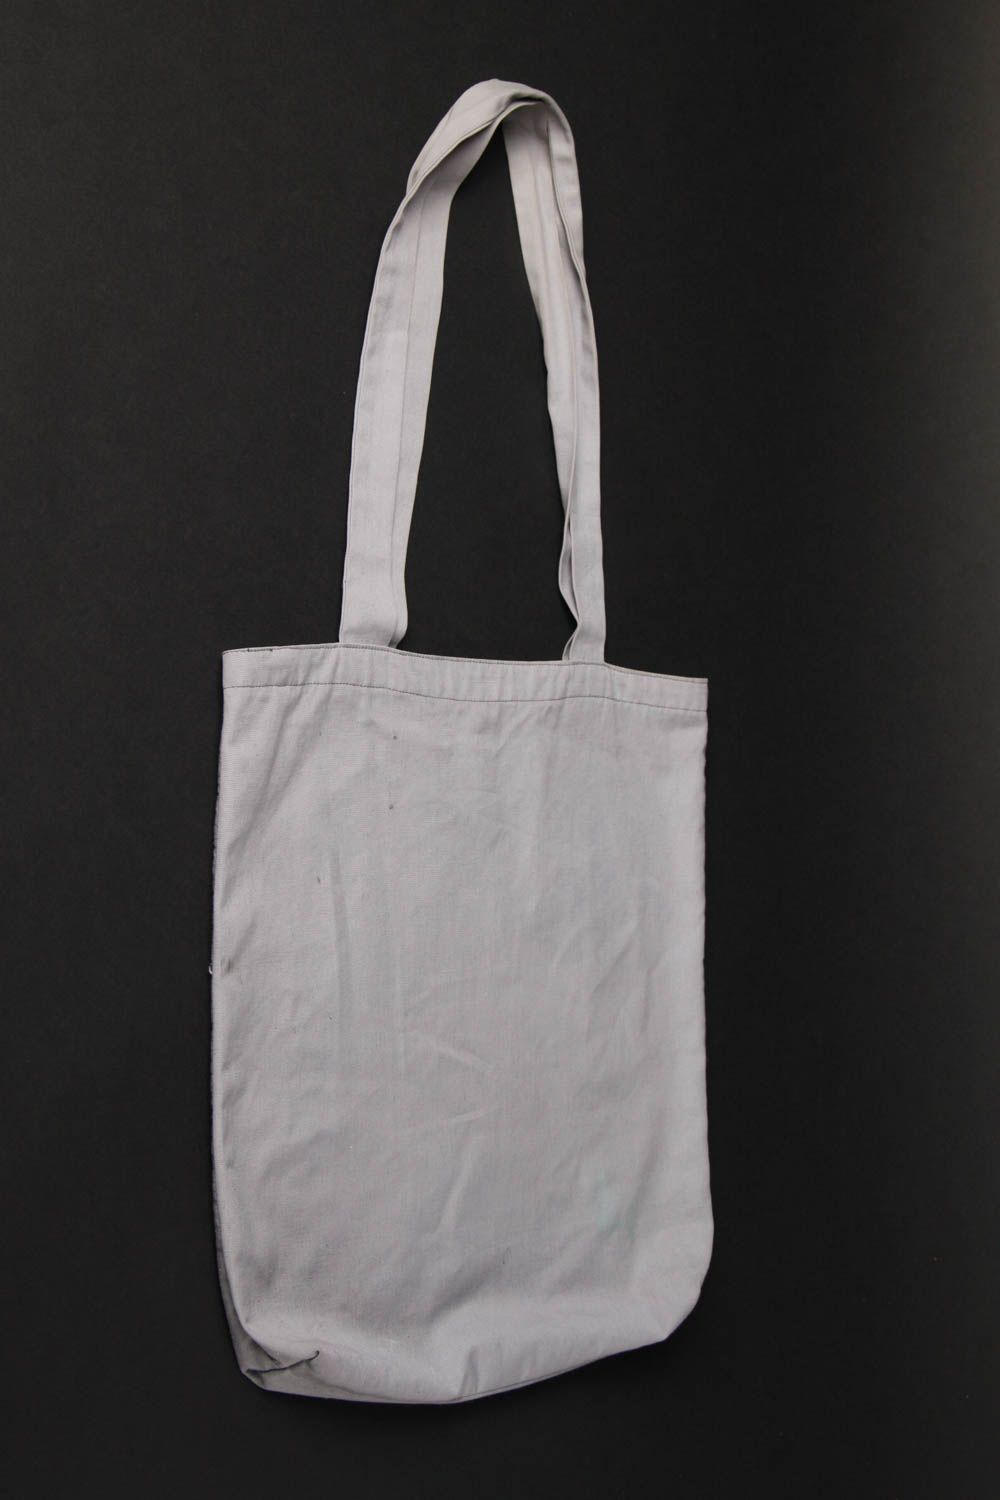 Хлопковая сумка ручной работы женская сумка расписная тканевая сумка авторская фото 3